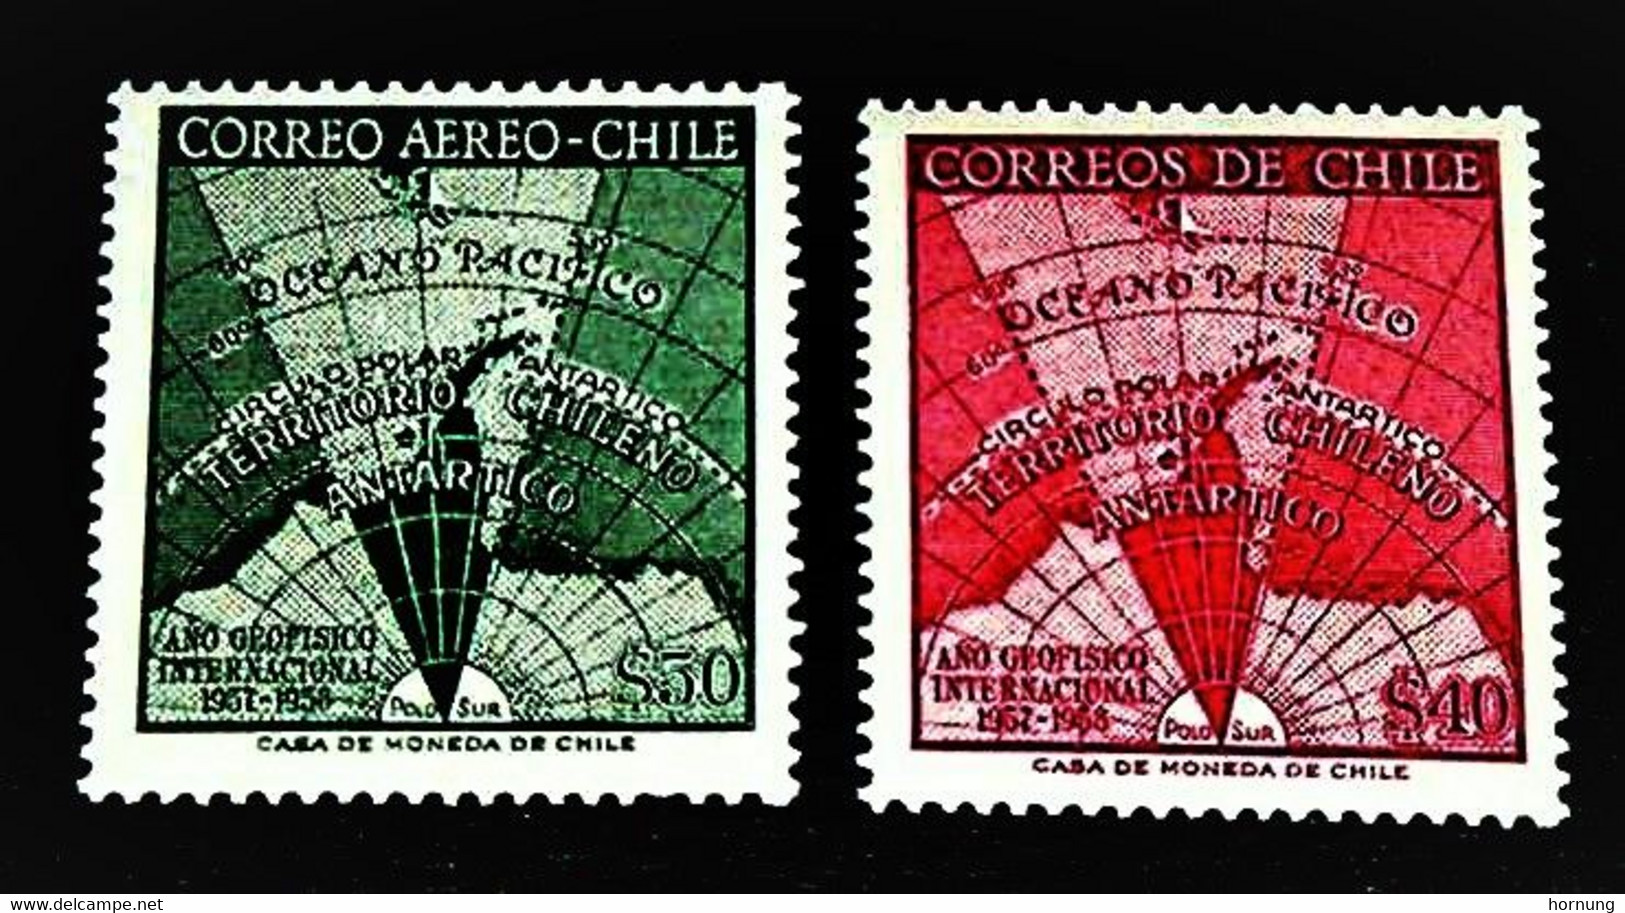 Chile,1958,Antartics, MNH. Michel # 545-546 - Año Geofísico Internacional